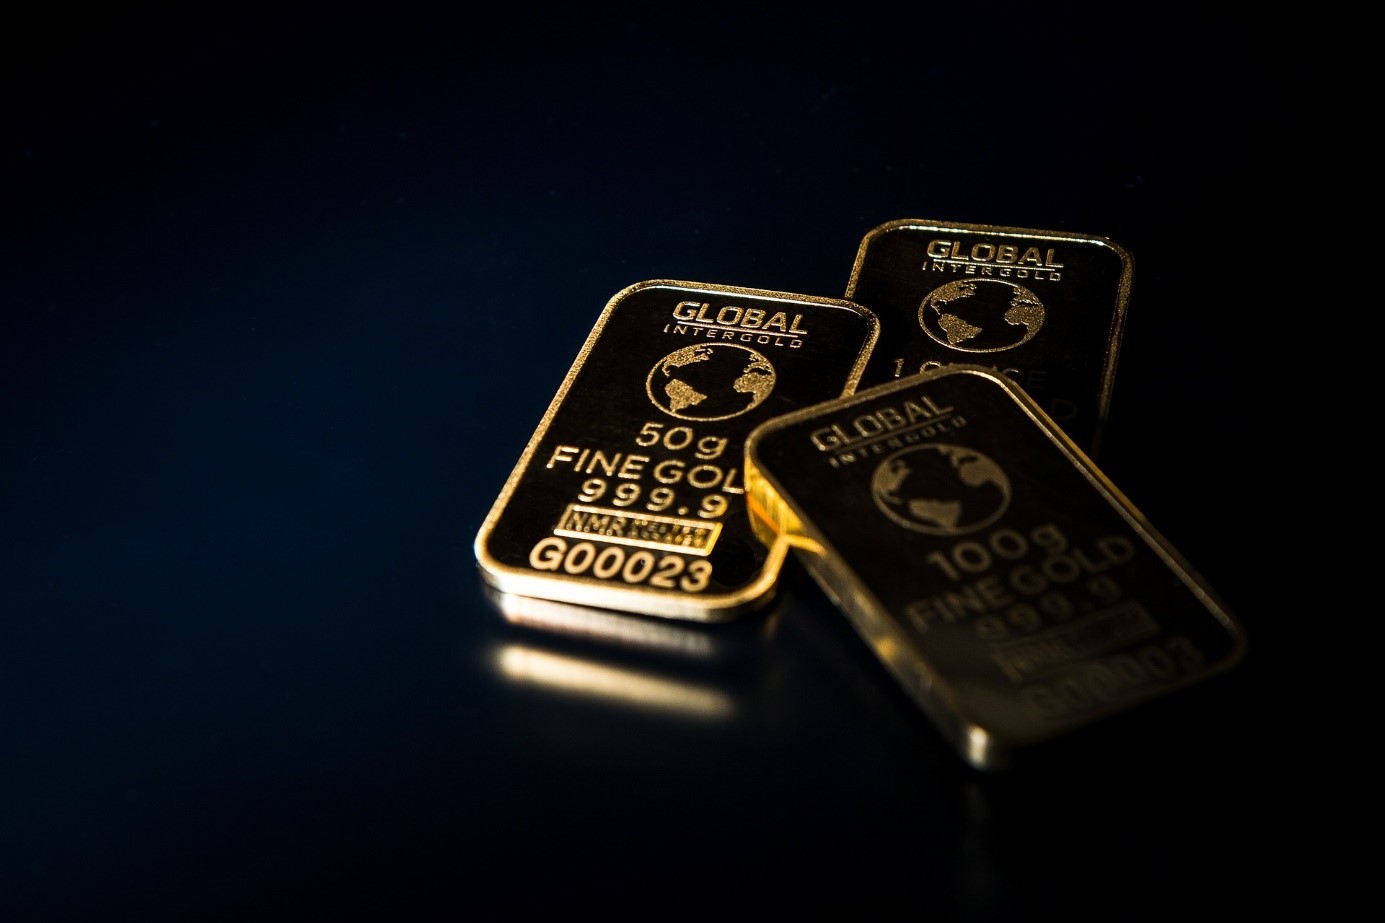 Royal Mint Physical Gold ETC (RMAU) har nästan en halv miljard dollar i tillgångar under förvaltning (AUM). Den 31 december 2021 uppgick RMAUs AUM till 278 miljoner dollar. Den 8 mars 2022 översteg dess AUM 486 miljoner USD, vilket motsvarar en tillväxt på 73,4 procent hittills under året. Detta betyder att den förvaltade volymen för Royal Mint Physical Gold ETC når sin högsta nivå sedan lanseringen.